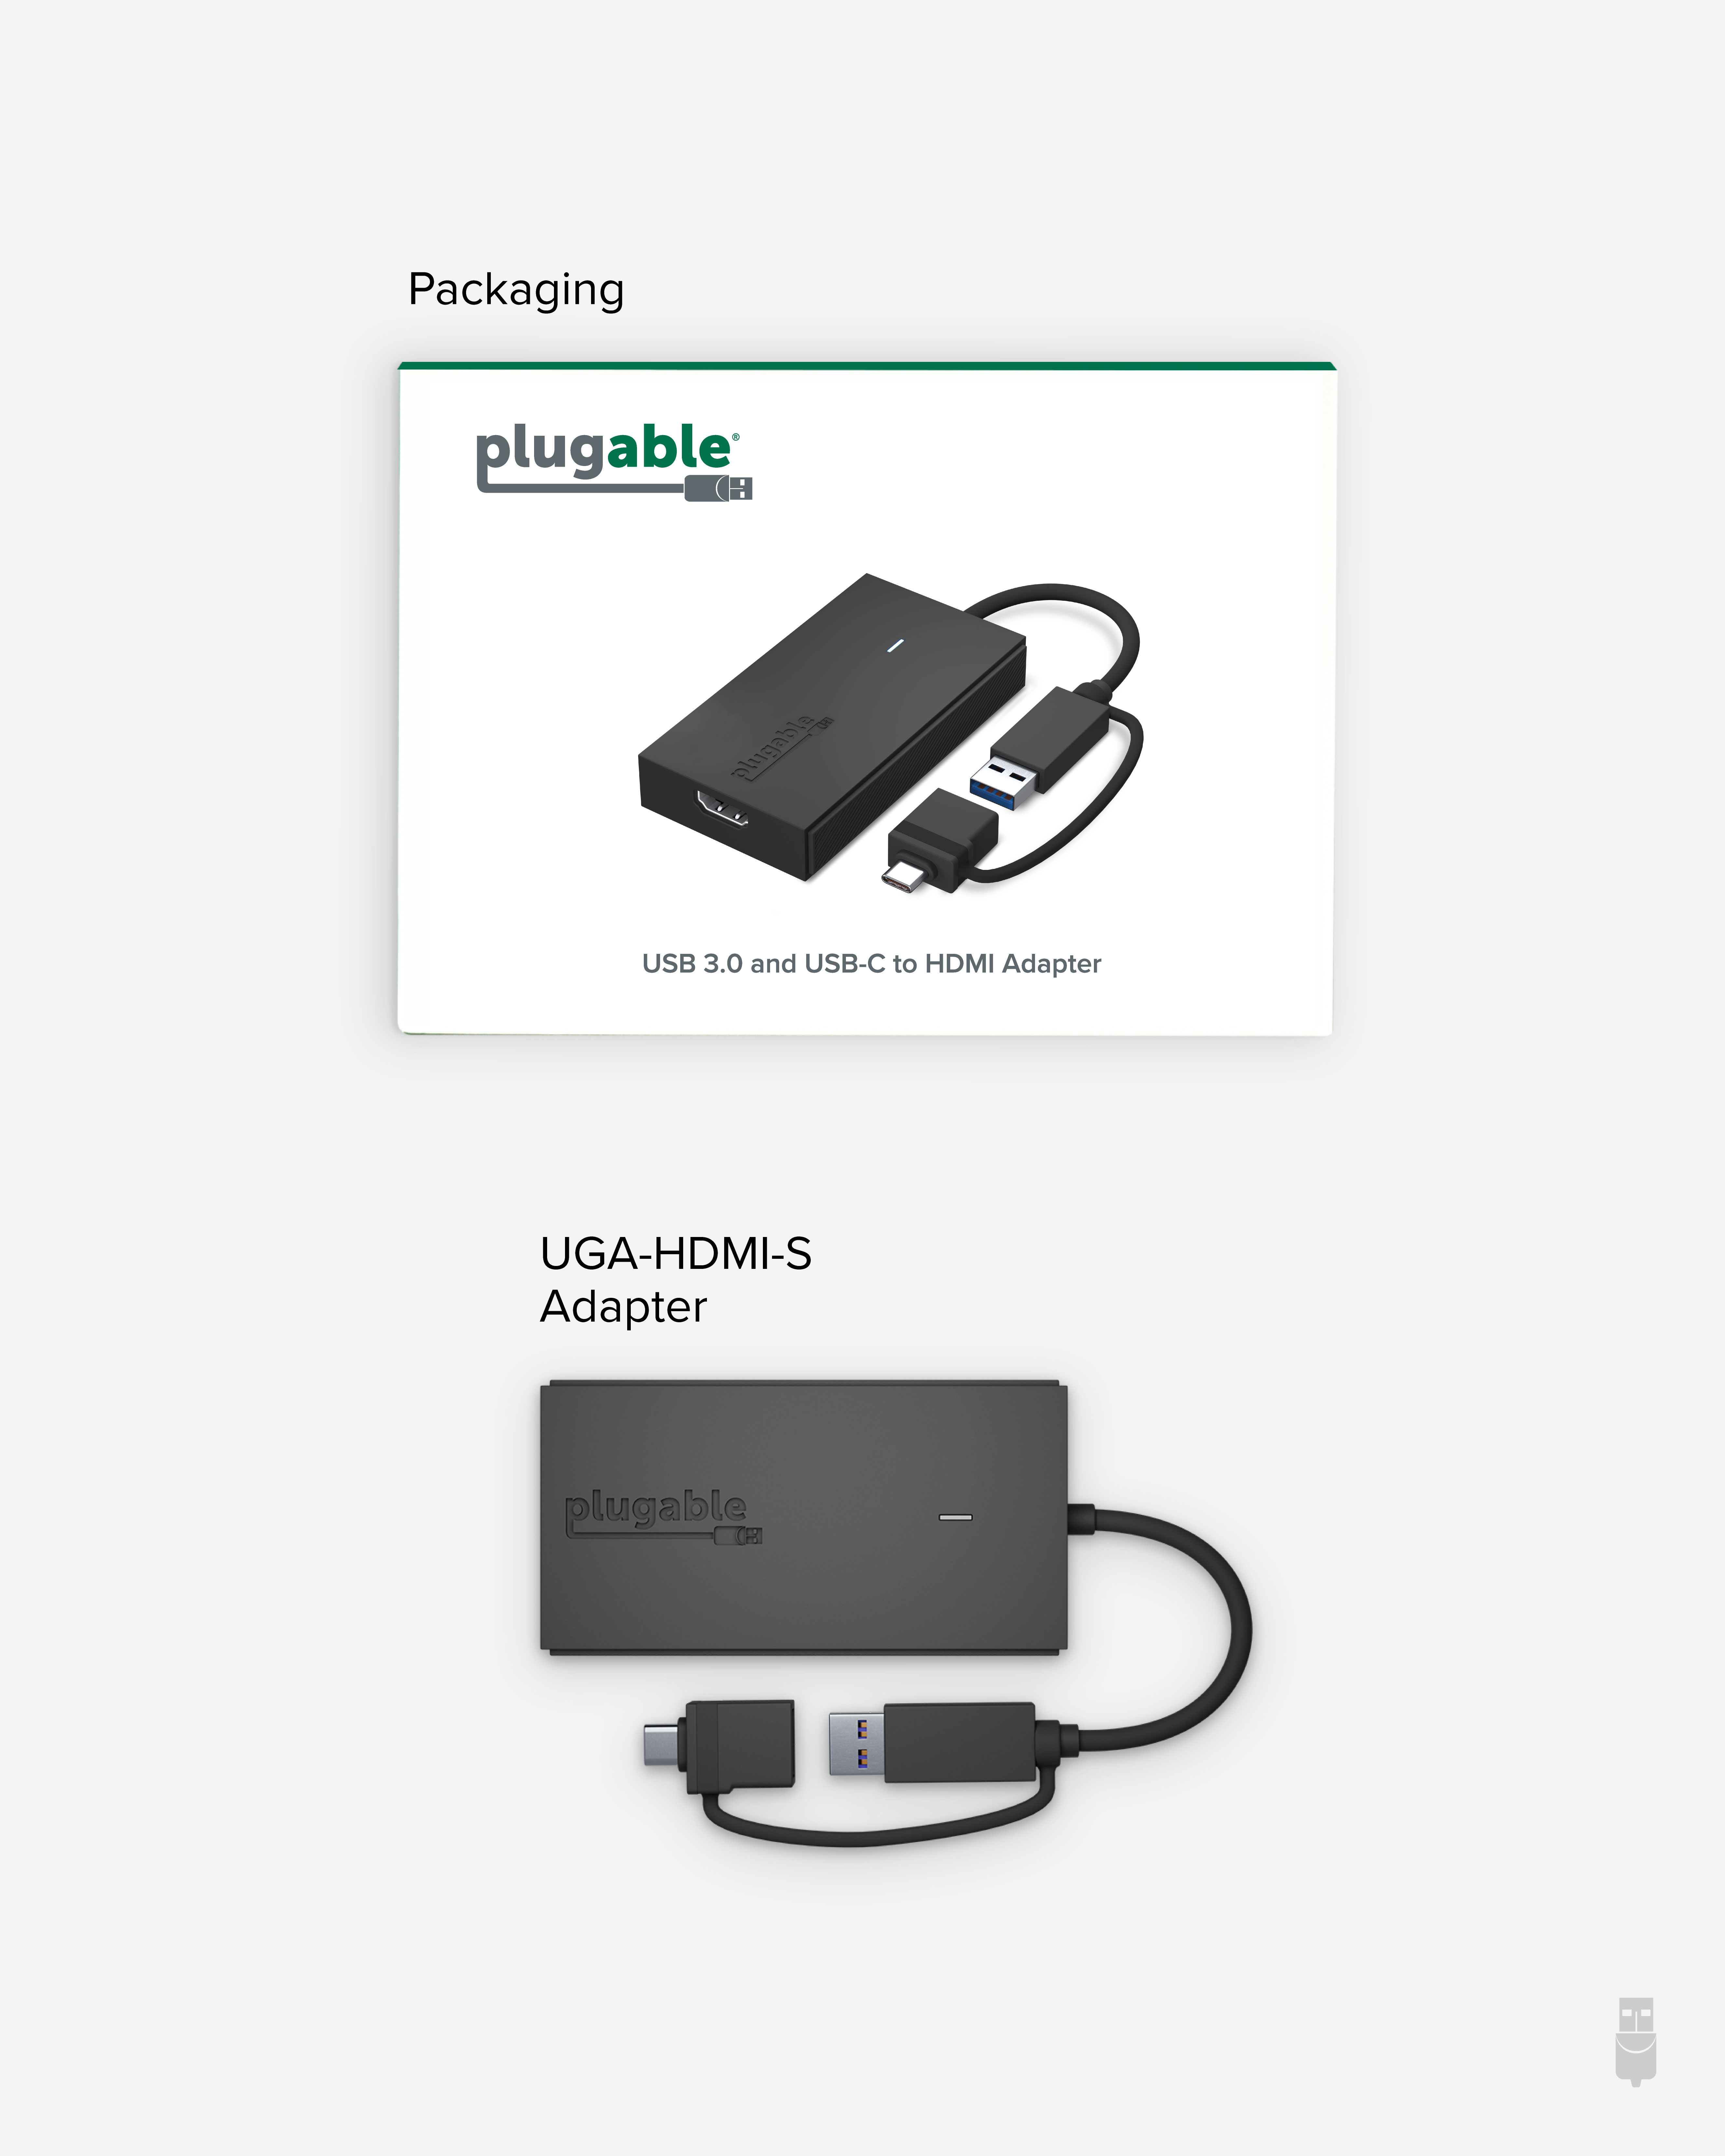 Plugable Technologies-UGA-HDMI-S